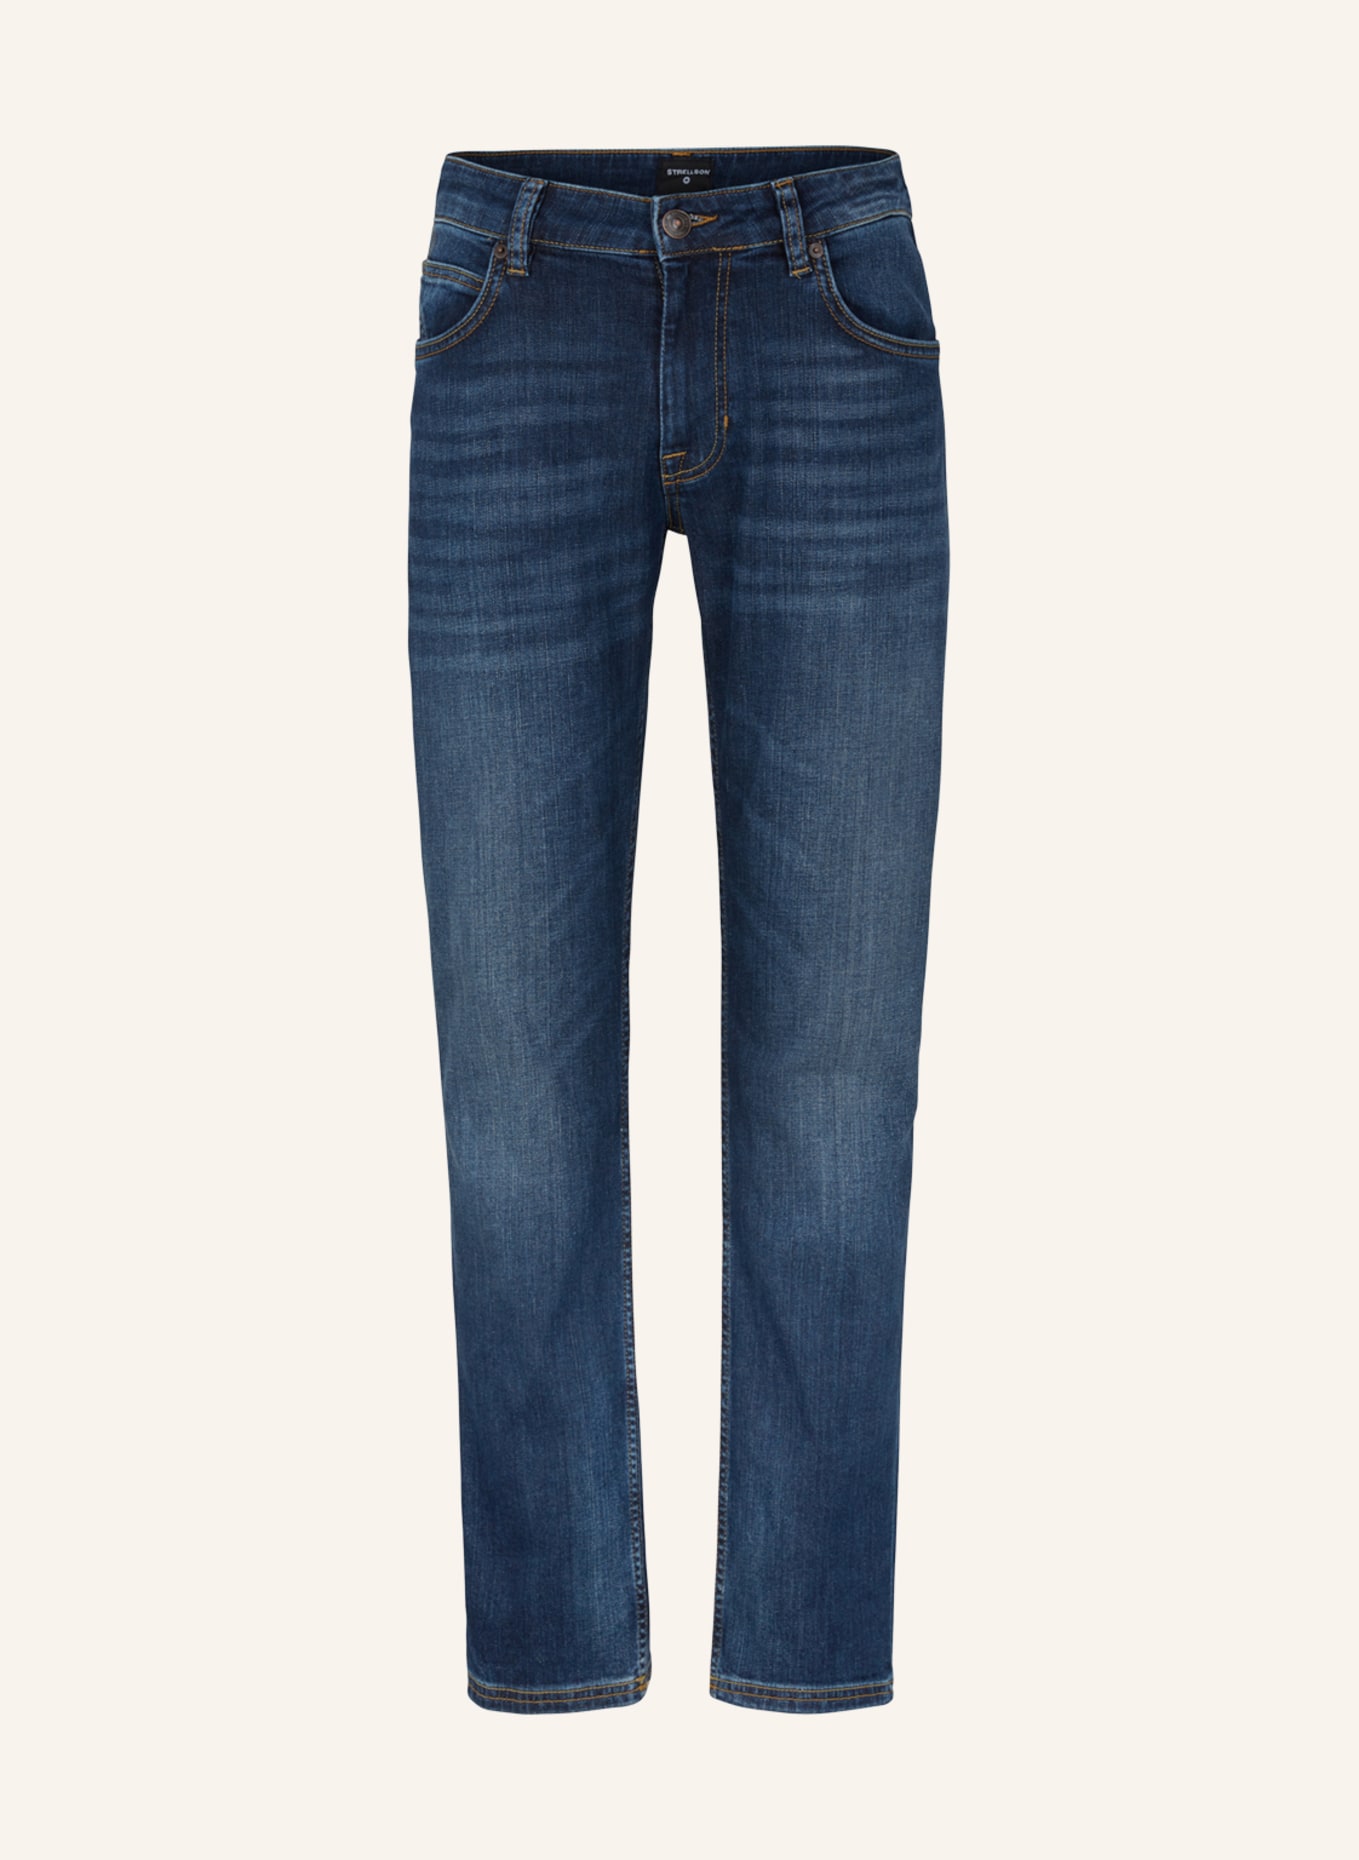 STRELLSON Jeans ROBIN, Farbe: MEDIUM BLUE (Bild 1)